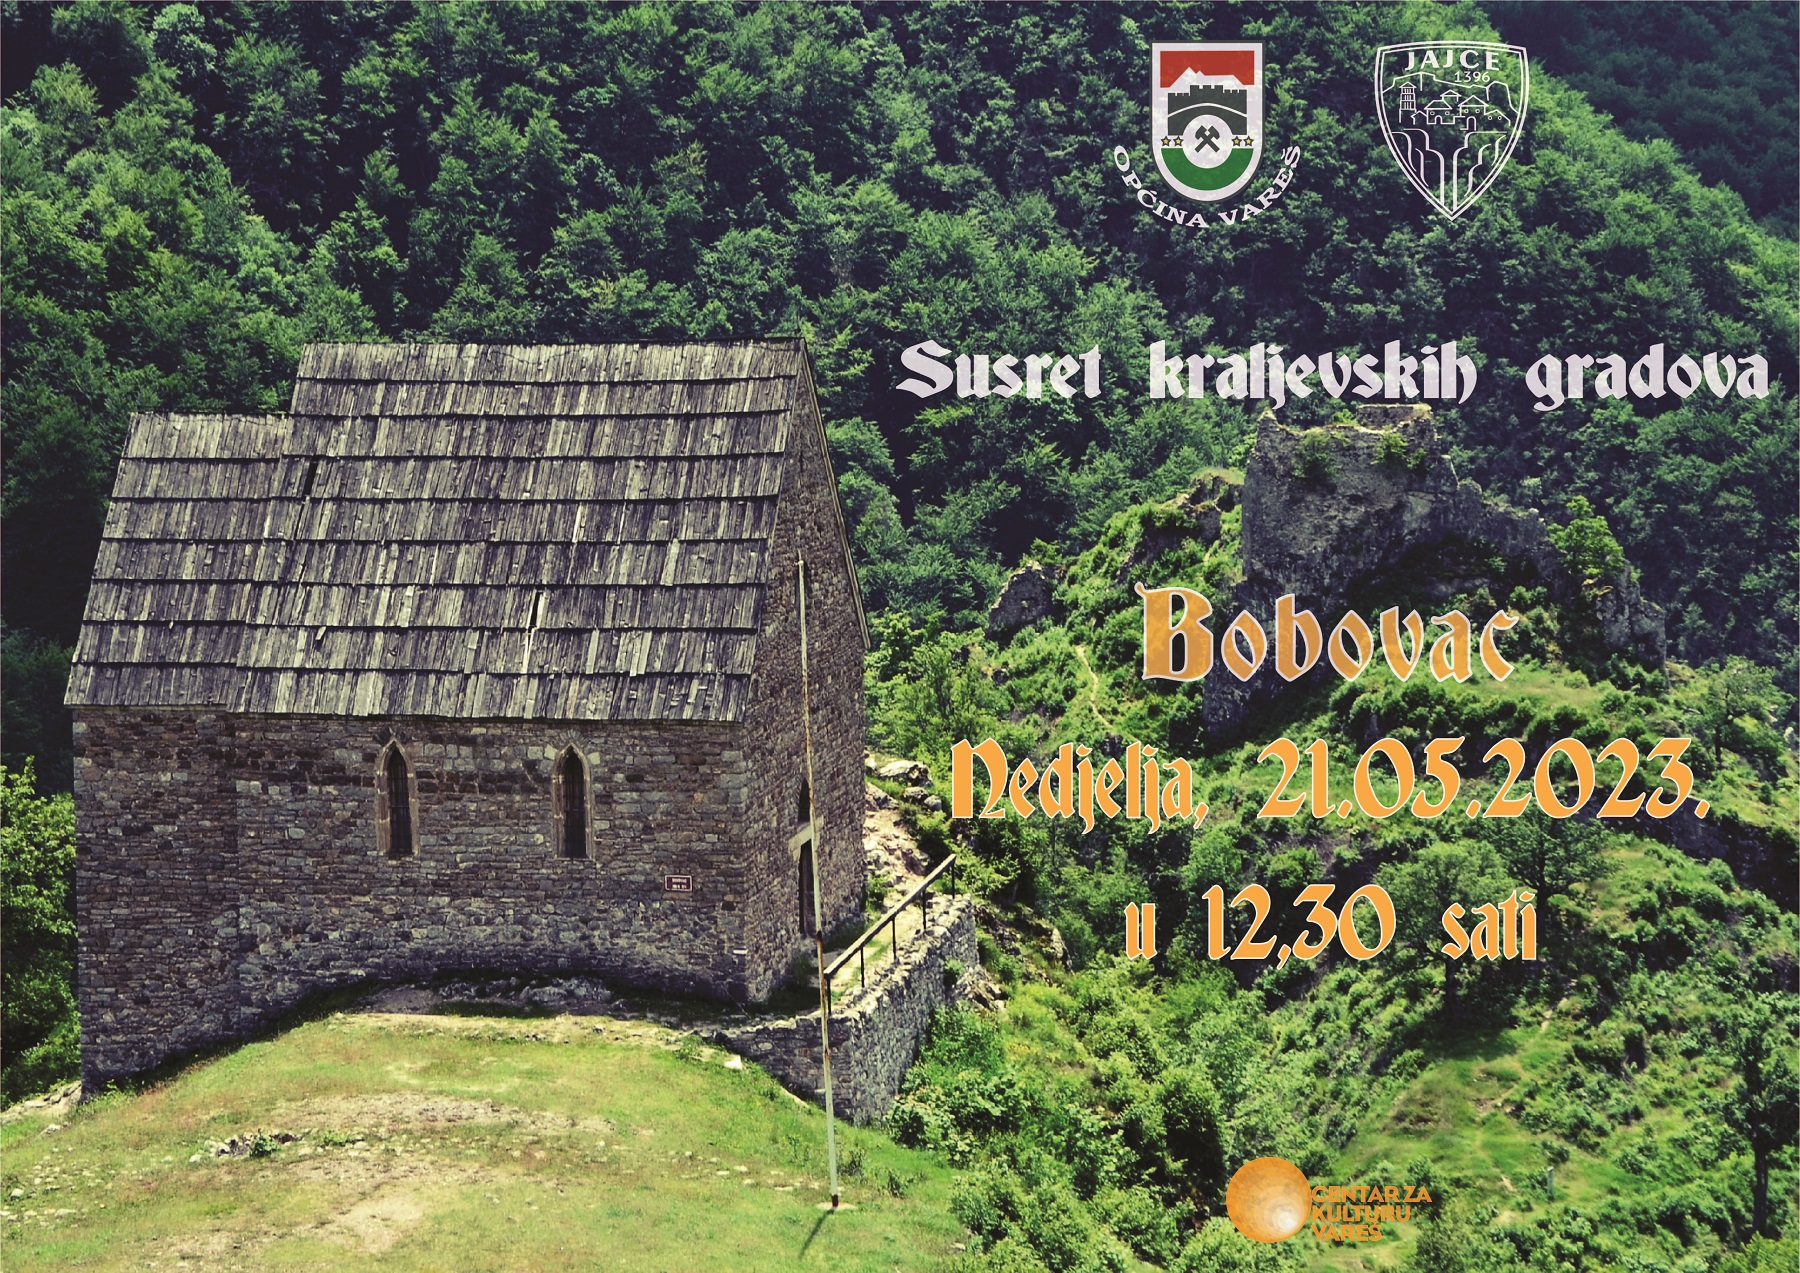 Plakat Susret kraljevskih gradova Bobovac